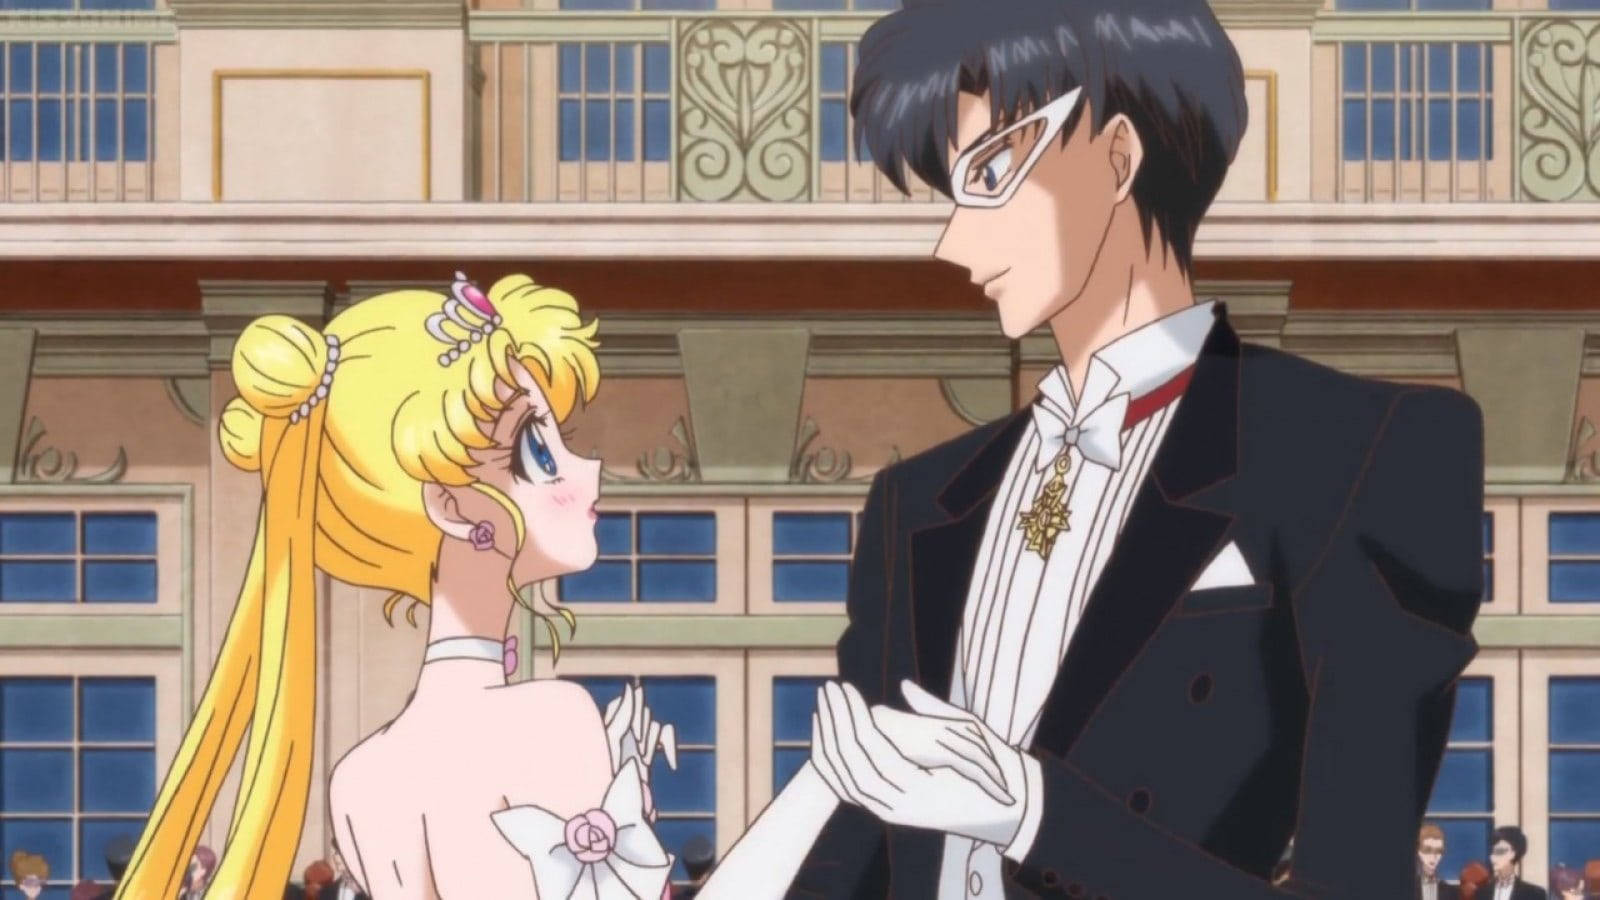 Romantiskaanimepar Sailor Moon-klänning. Wallpaper